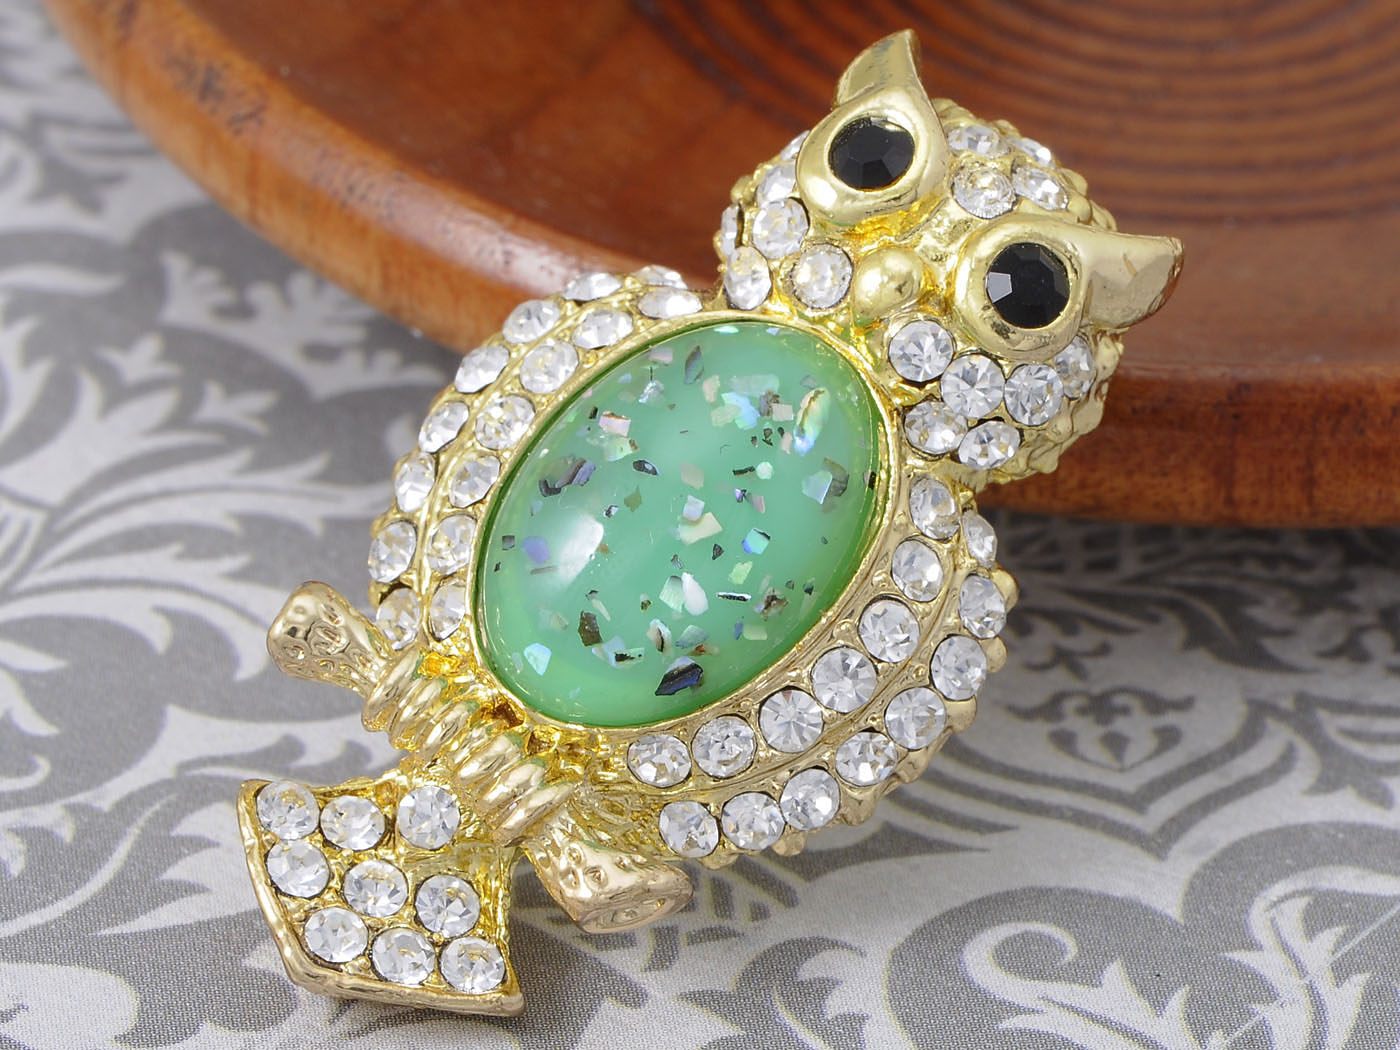 Elements Green Shimmer Owl Bird Pin Brooch